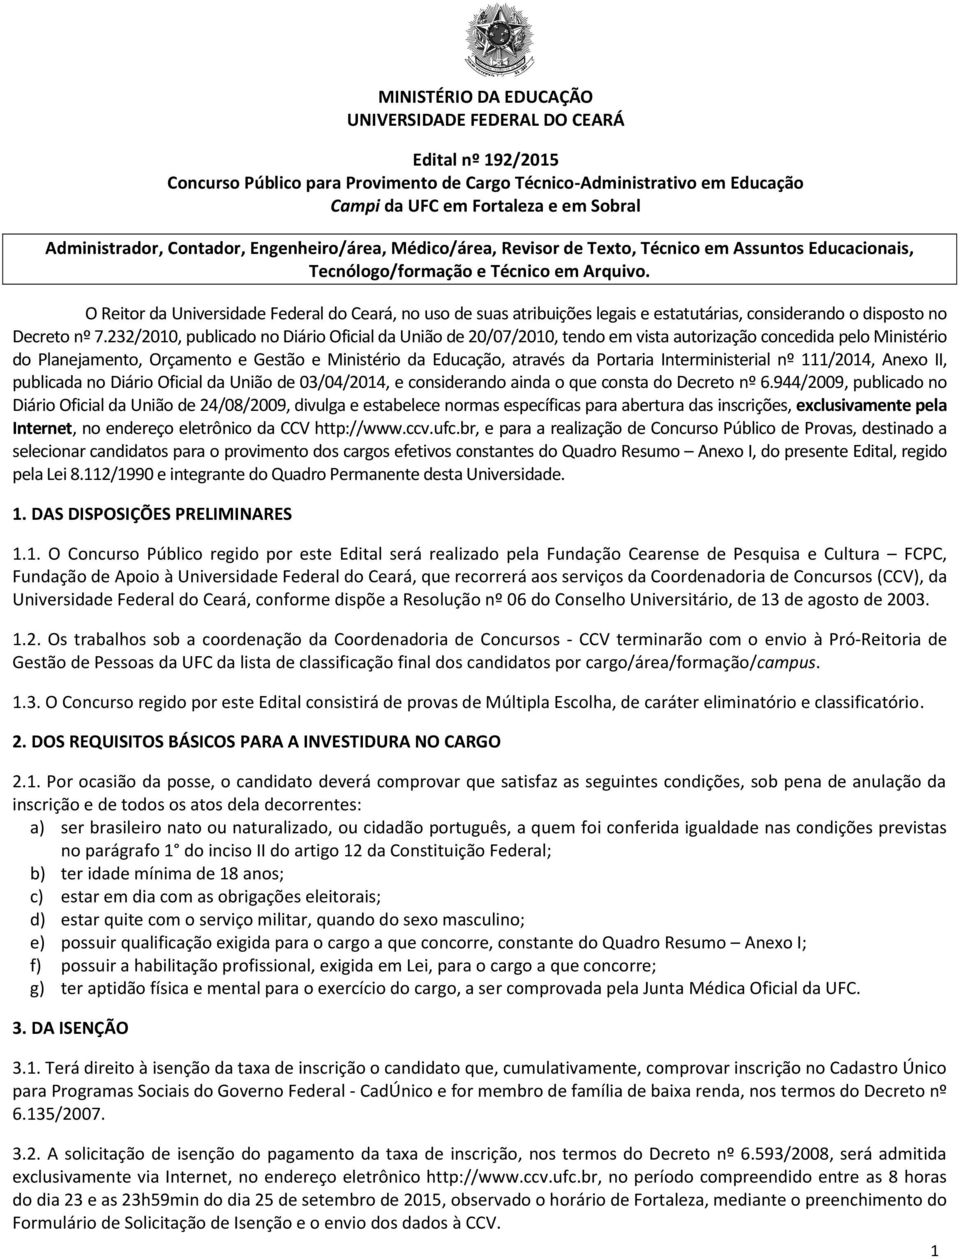 O Reitor da Universidade Federal do Ceará, no uso de suas atribuições legais e estatutárias, considerando o disposto no Decreto nº 7.